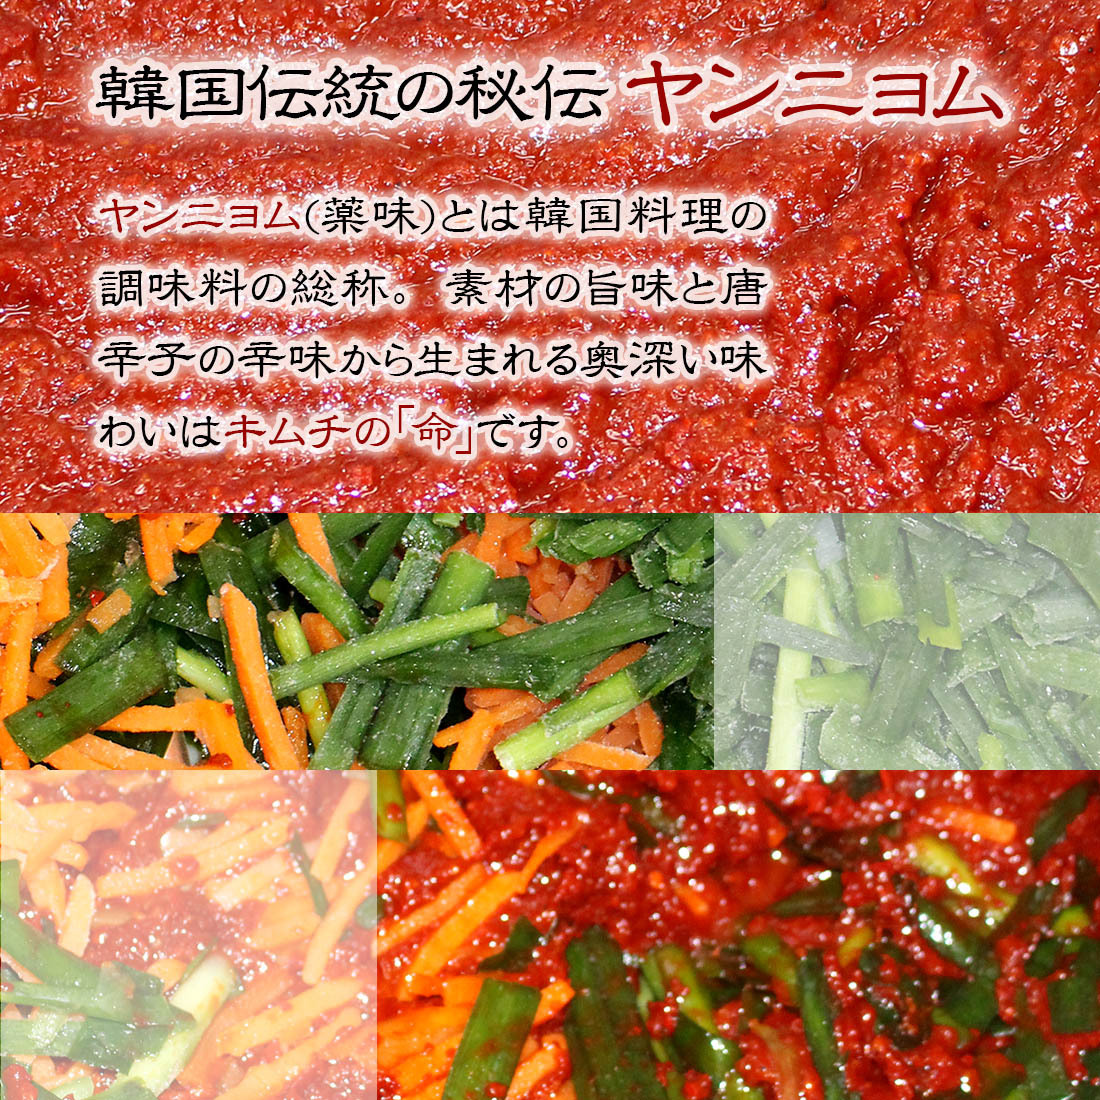 大根キムチ 1kg 本格 キムチ 国産 乳酸菌 発酵 発酵食品 自然発酵 韓国